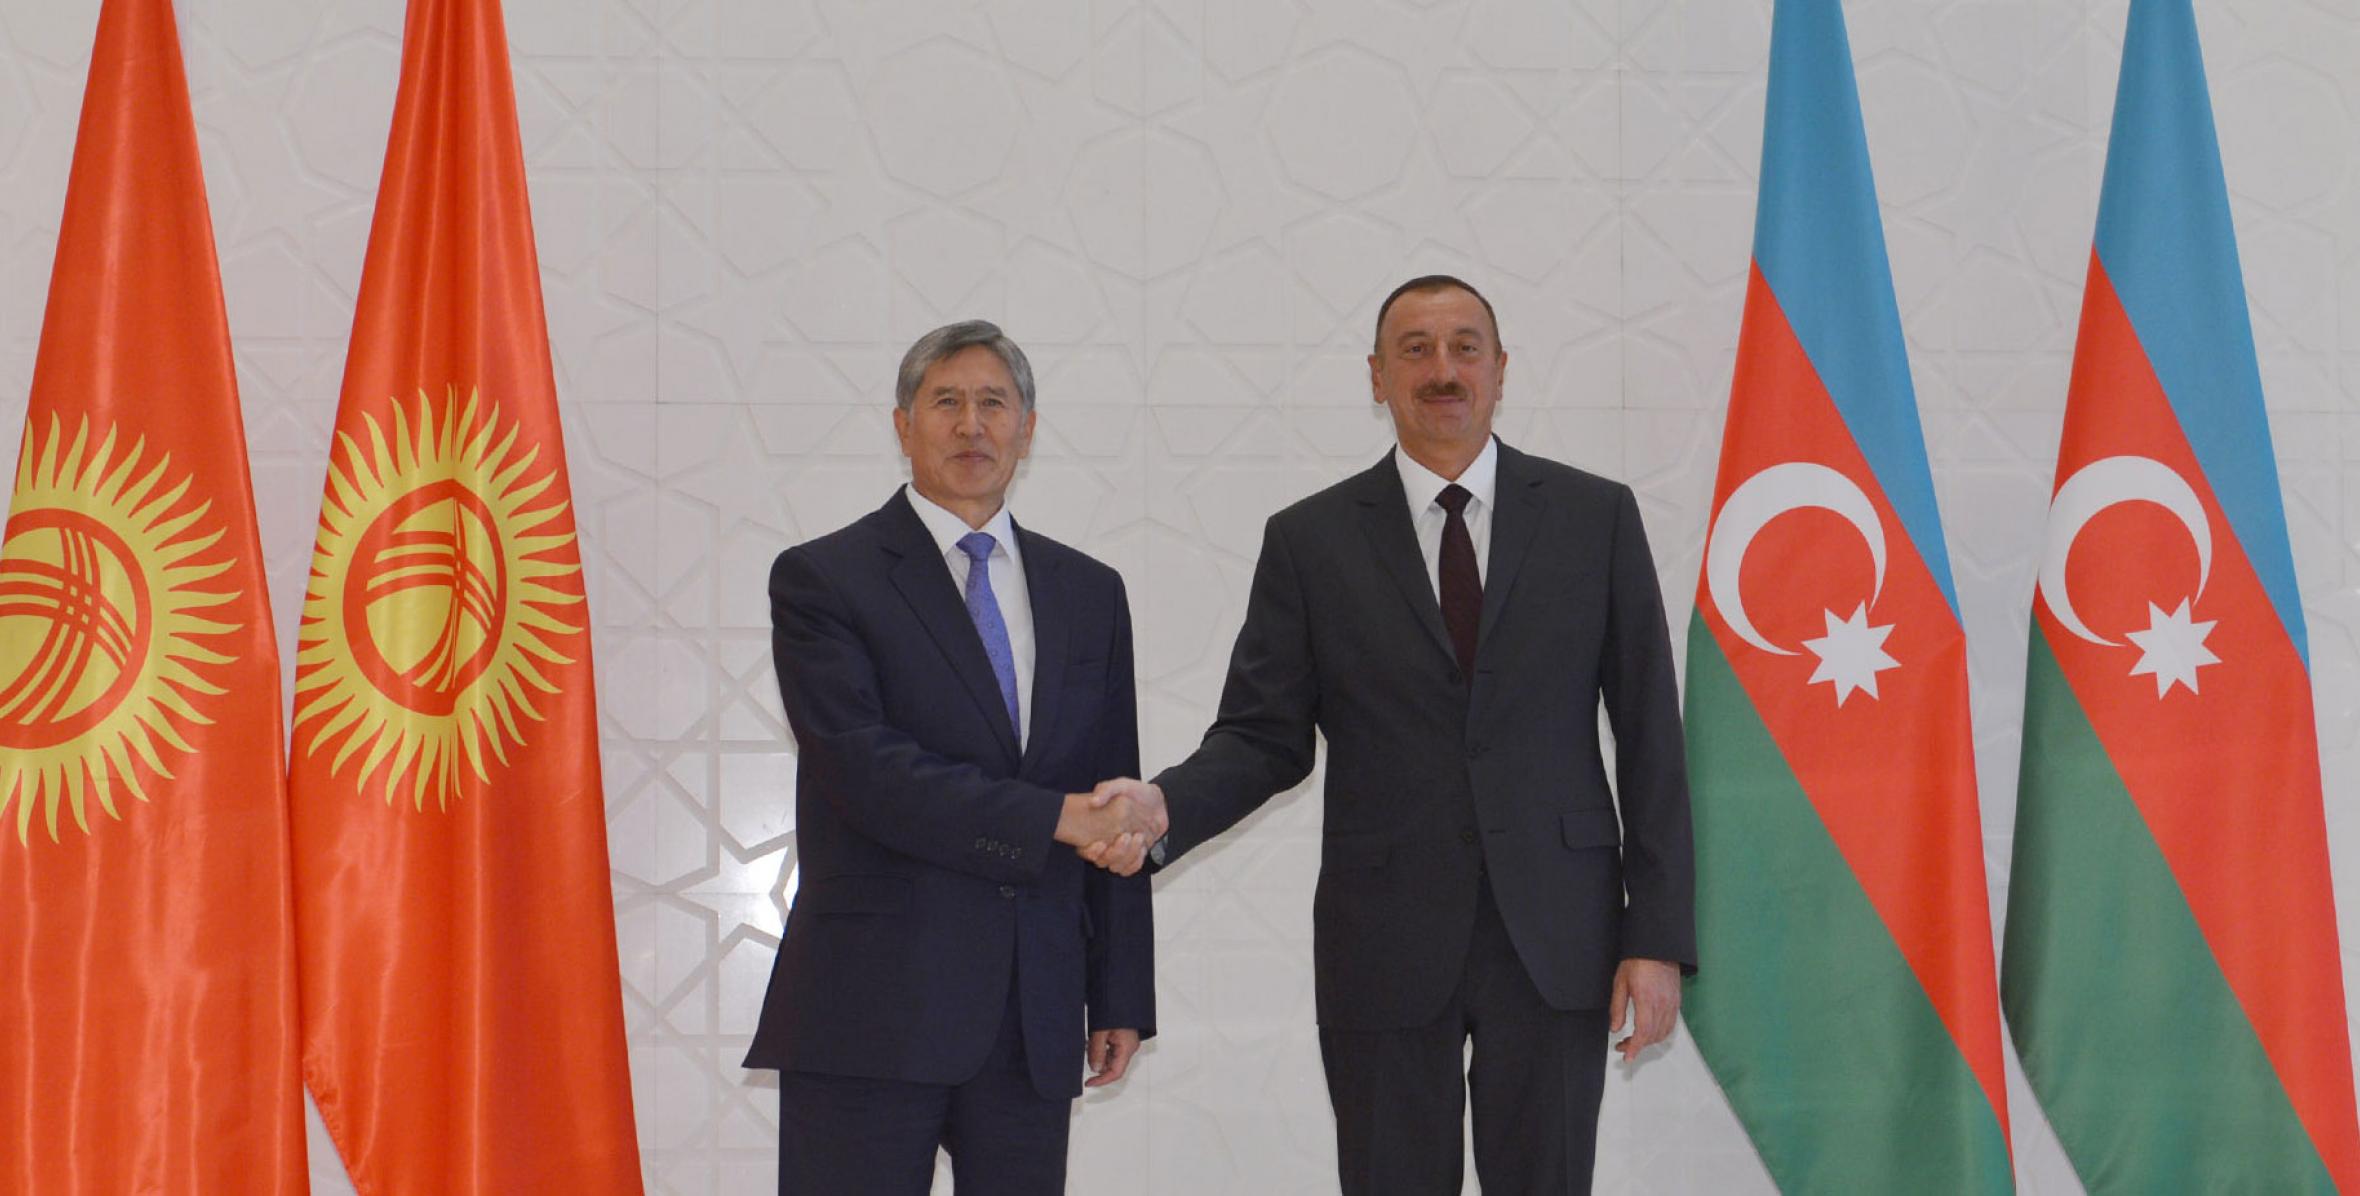 В Габале состоялась встреча Ильхама Алиева и Президента Кыргызской Республики Алмазбека Атамбаева